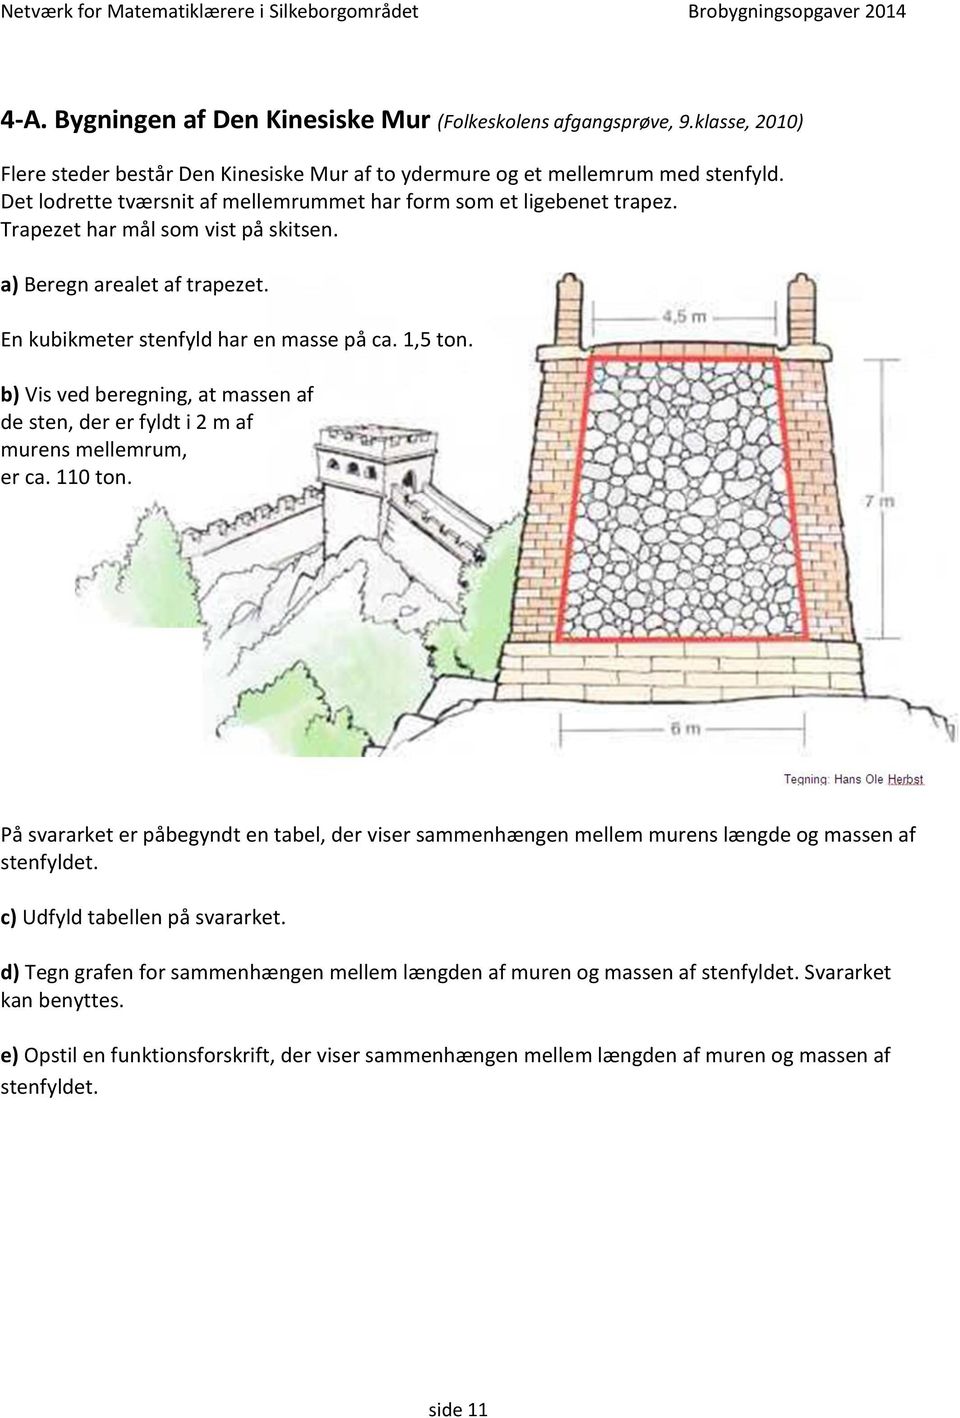 b) Vis ved beregning, at massen af de sten, der er fyldt i 2 m af murens mellemrum, er ca. 110 ton.